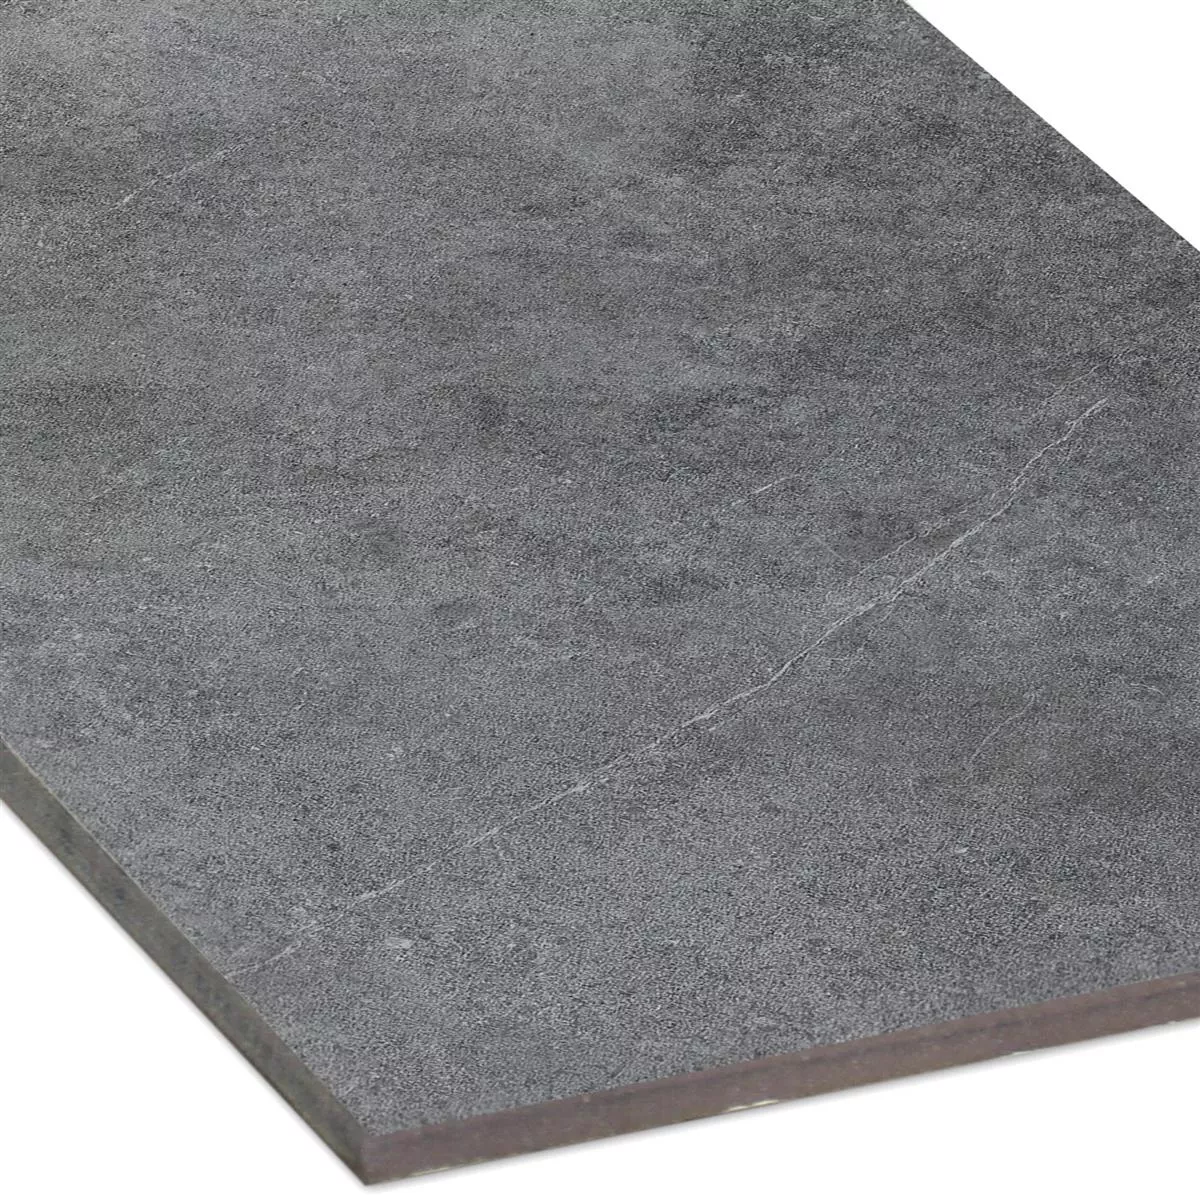 Floor Tiles Montana Unglazed Anthracite 30x60cm / R10B